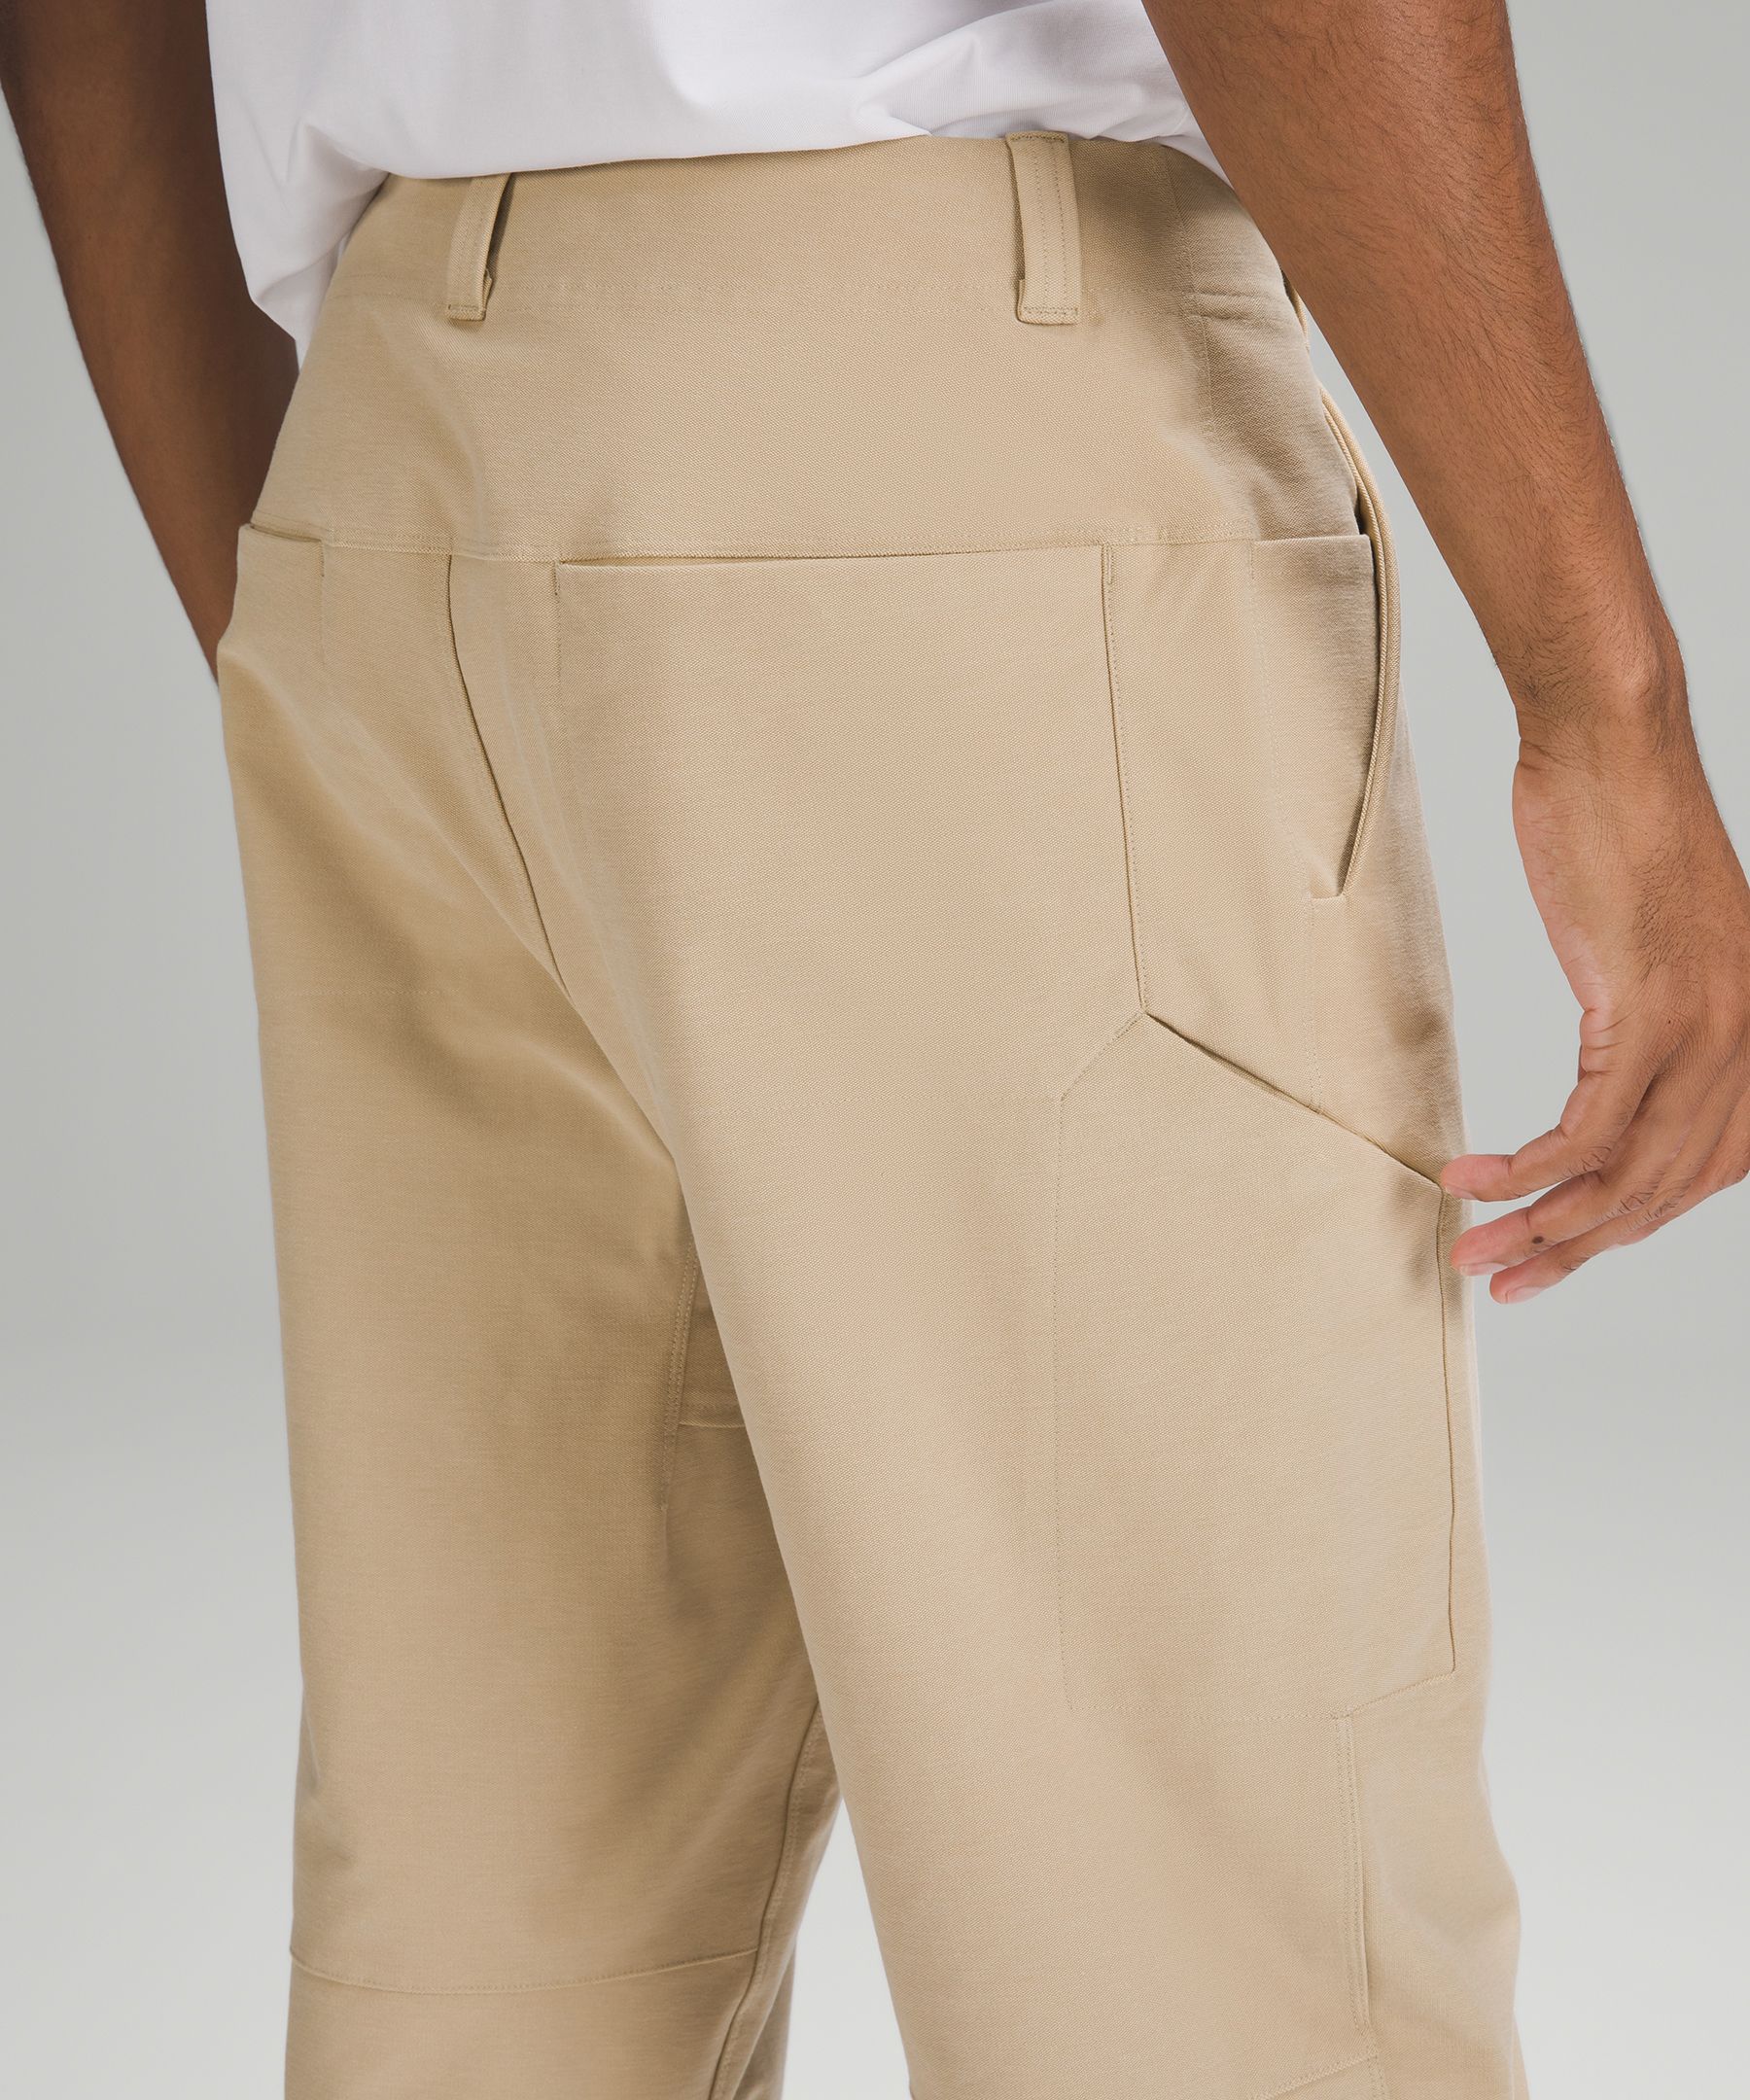 Utilitech Carpenter Pant, Men's Trousers